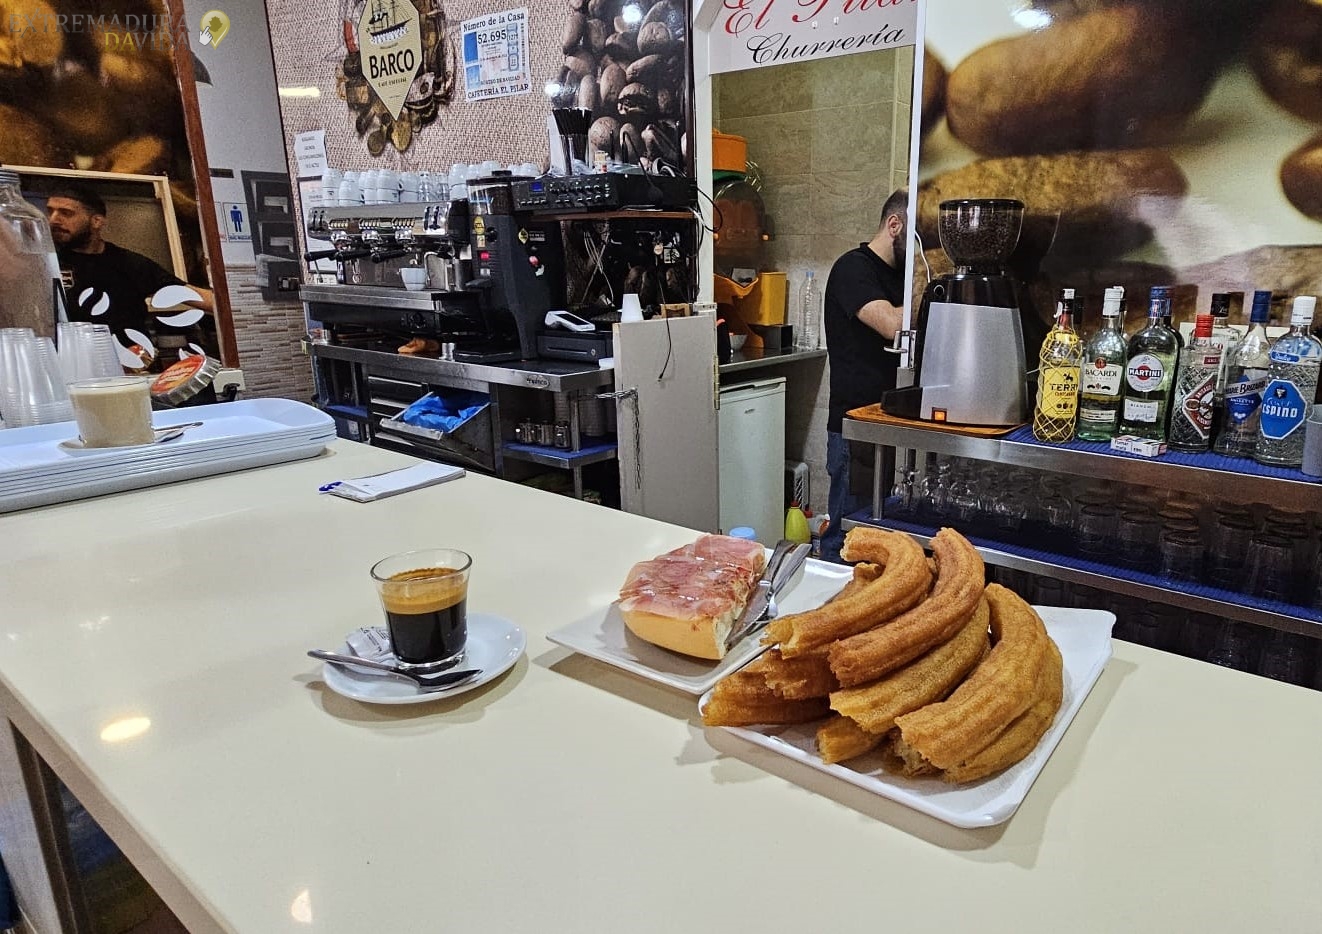 Churreria en Almendralejo desayunos El Pilar 